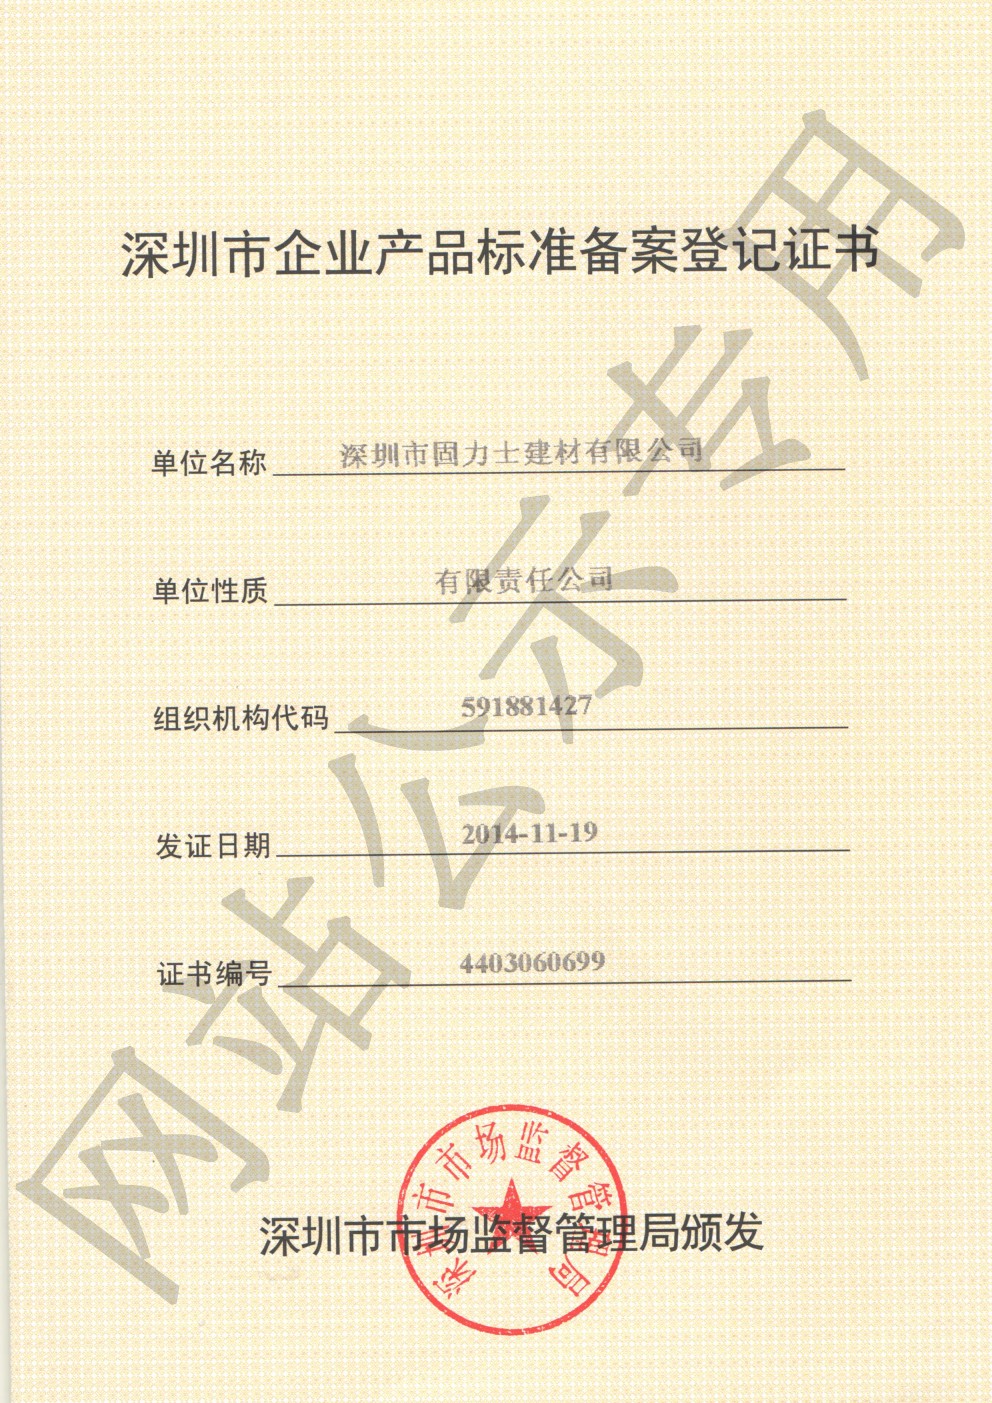 白银企业产品标准登记证书